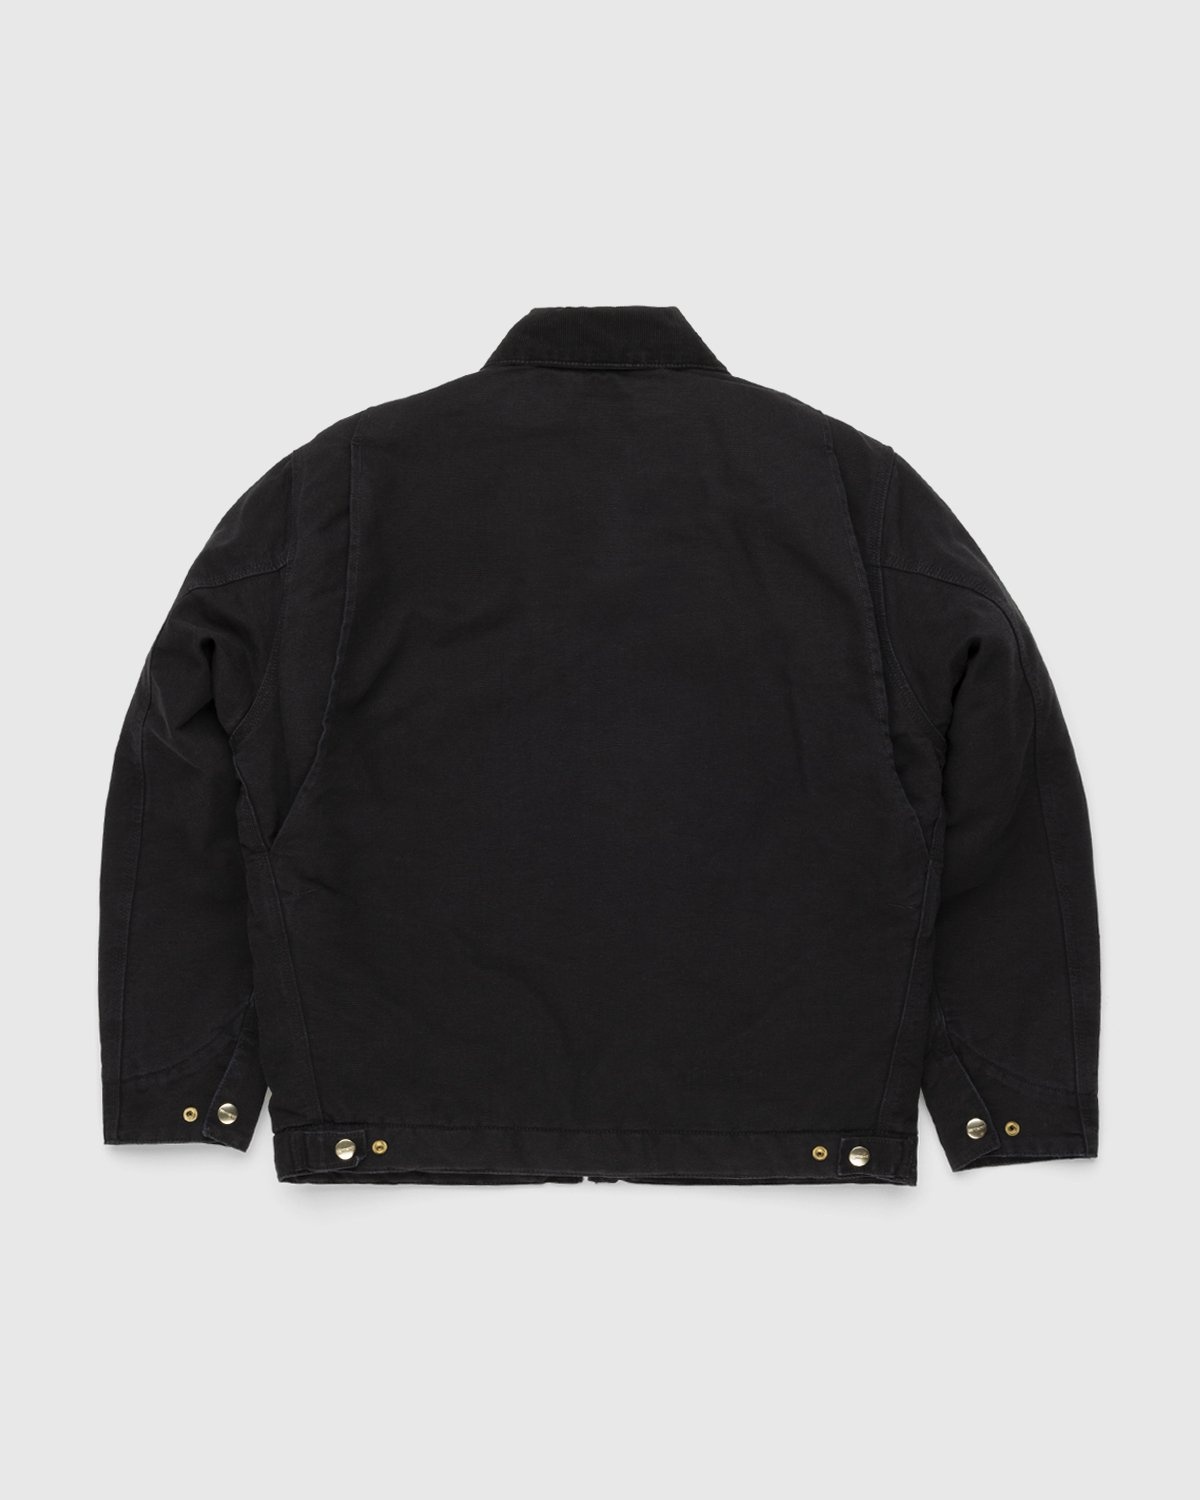 Carhartt WIP – OG Detroit Jacket Black - Outerwear - Black - Image 2